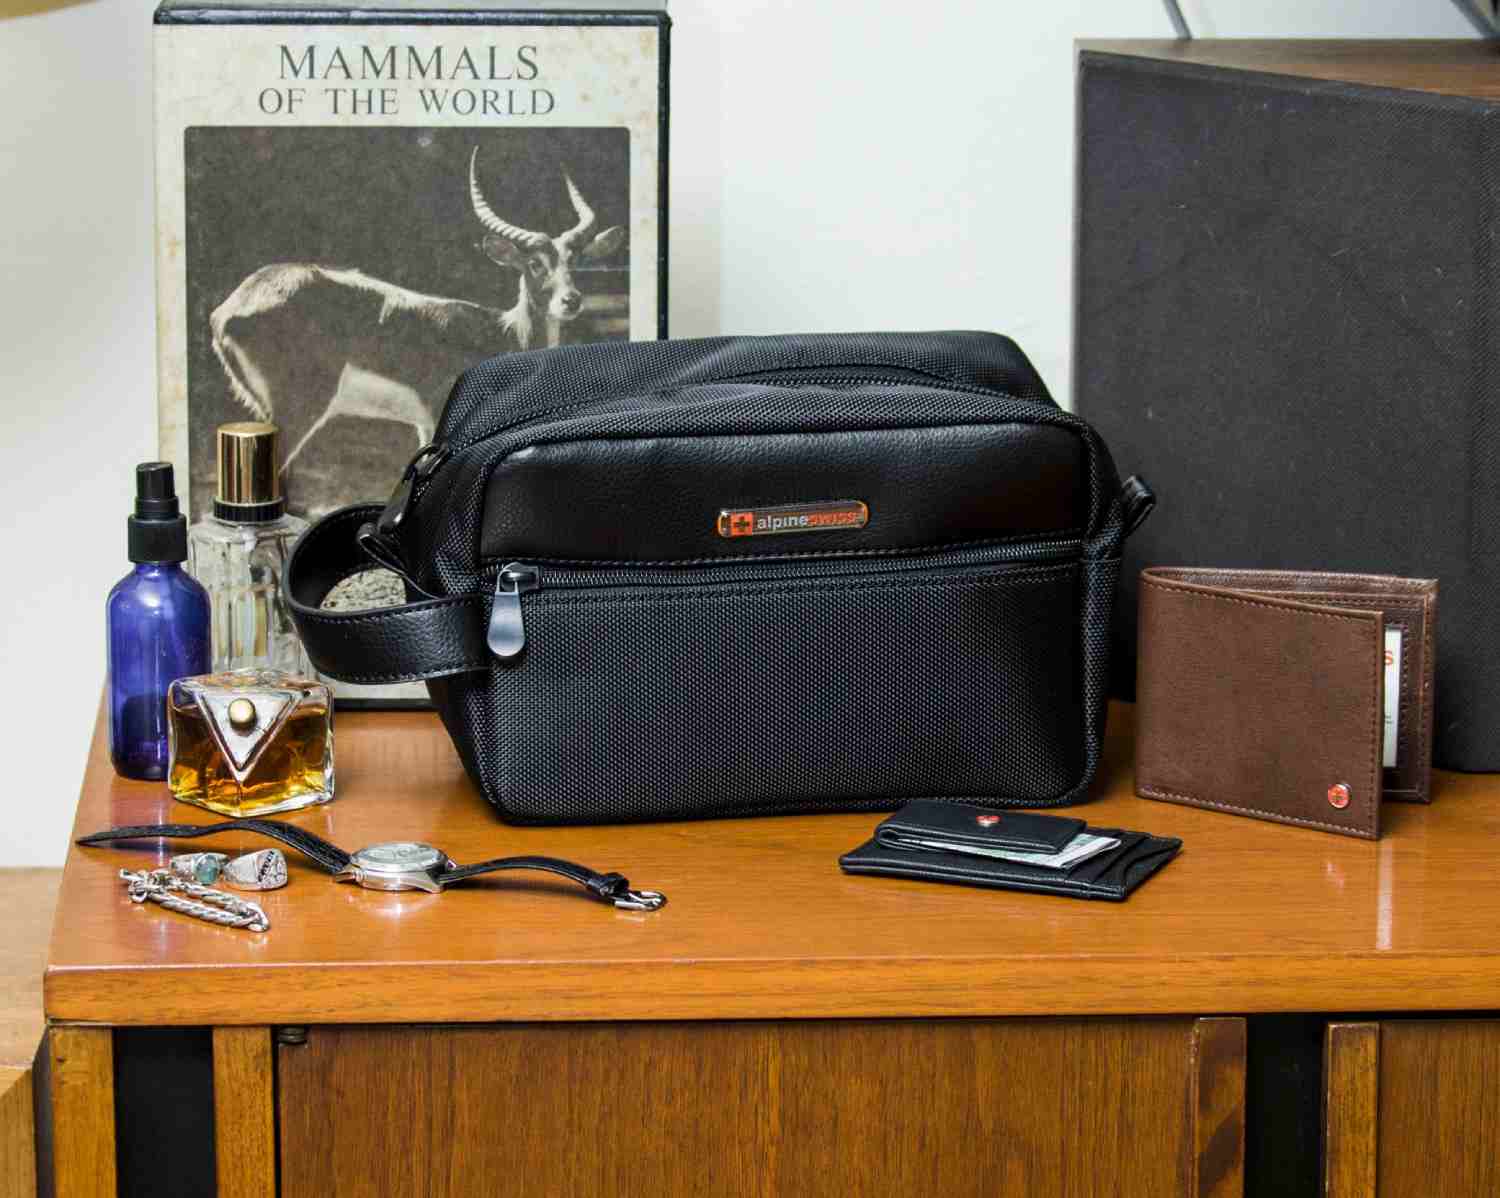 Travel essentials for a business traveler groom